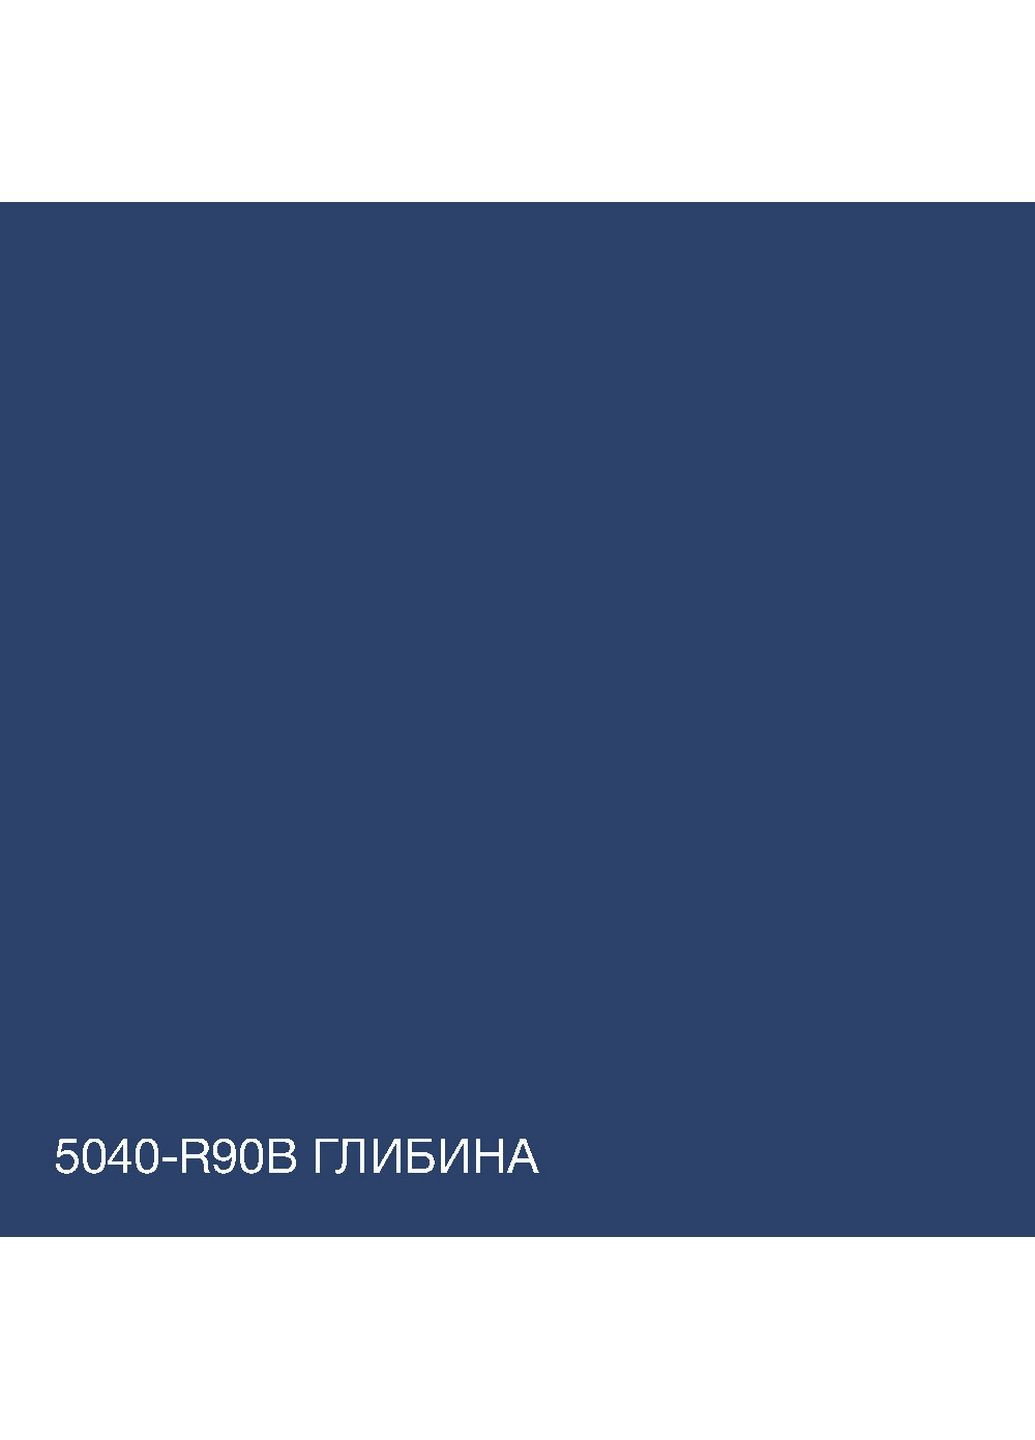 Краска Акрил-латексная Фасадная 5040-R90B (C) Глубина 3л SkyLine (283327406)